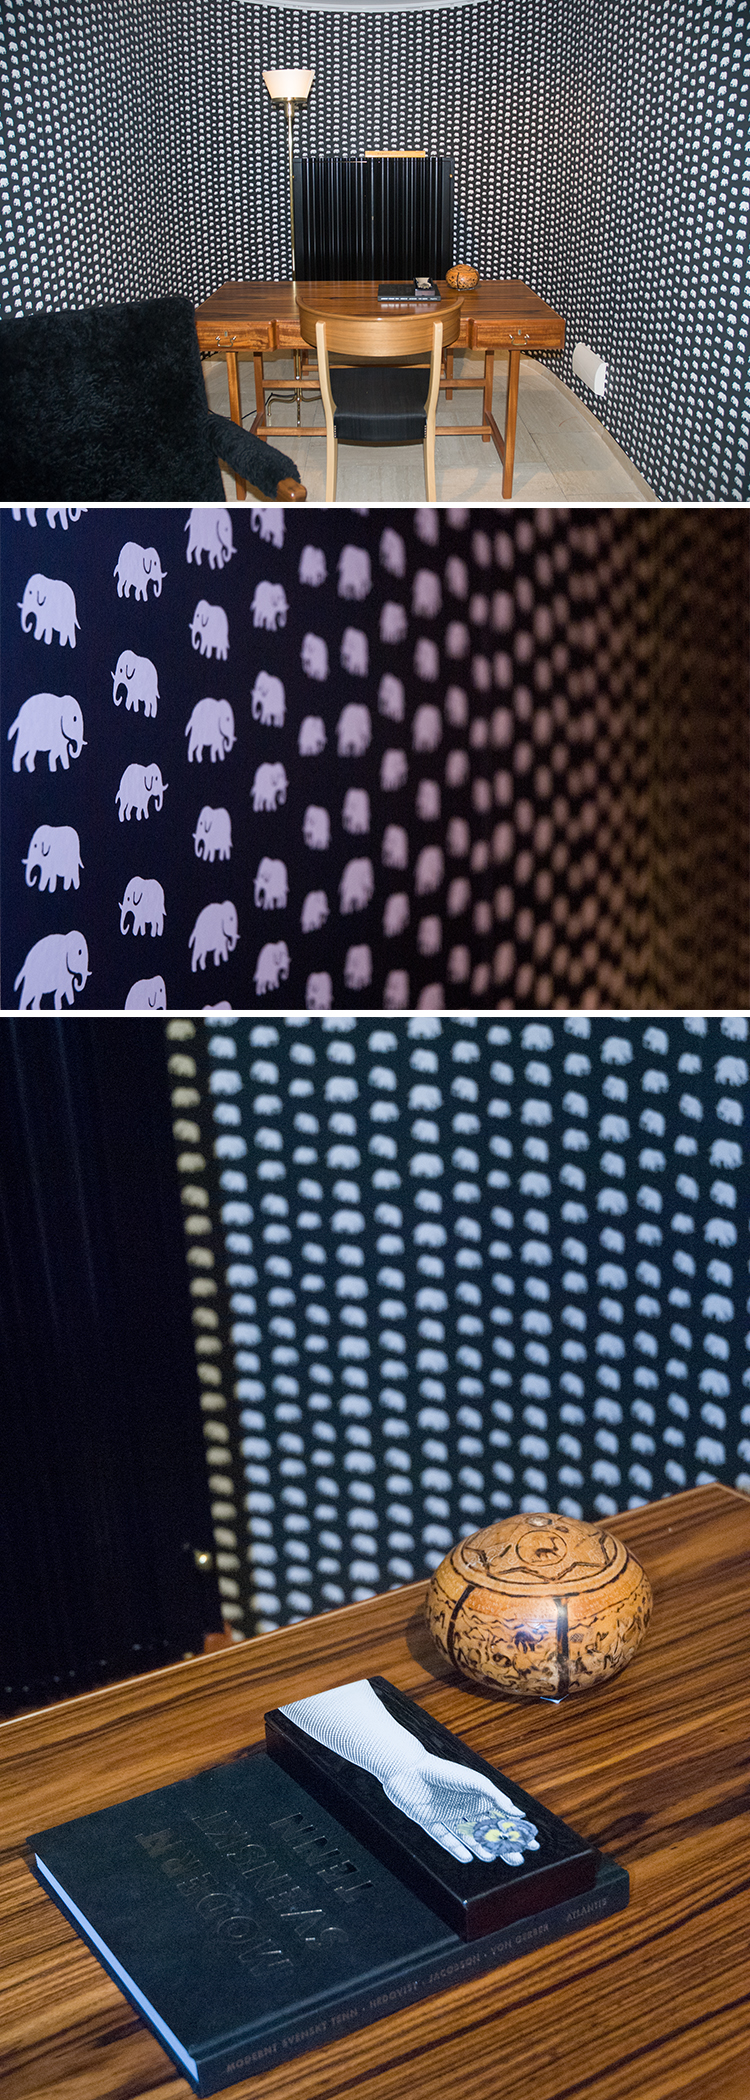 Det kända elefantmönstret lanseras i nya färger på tapet och textil